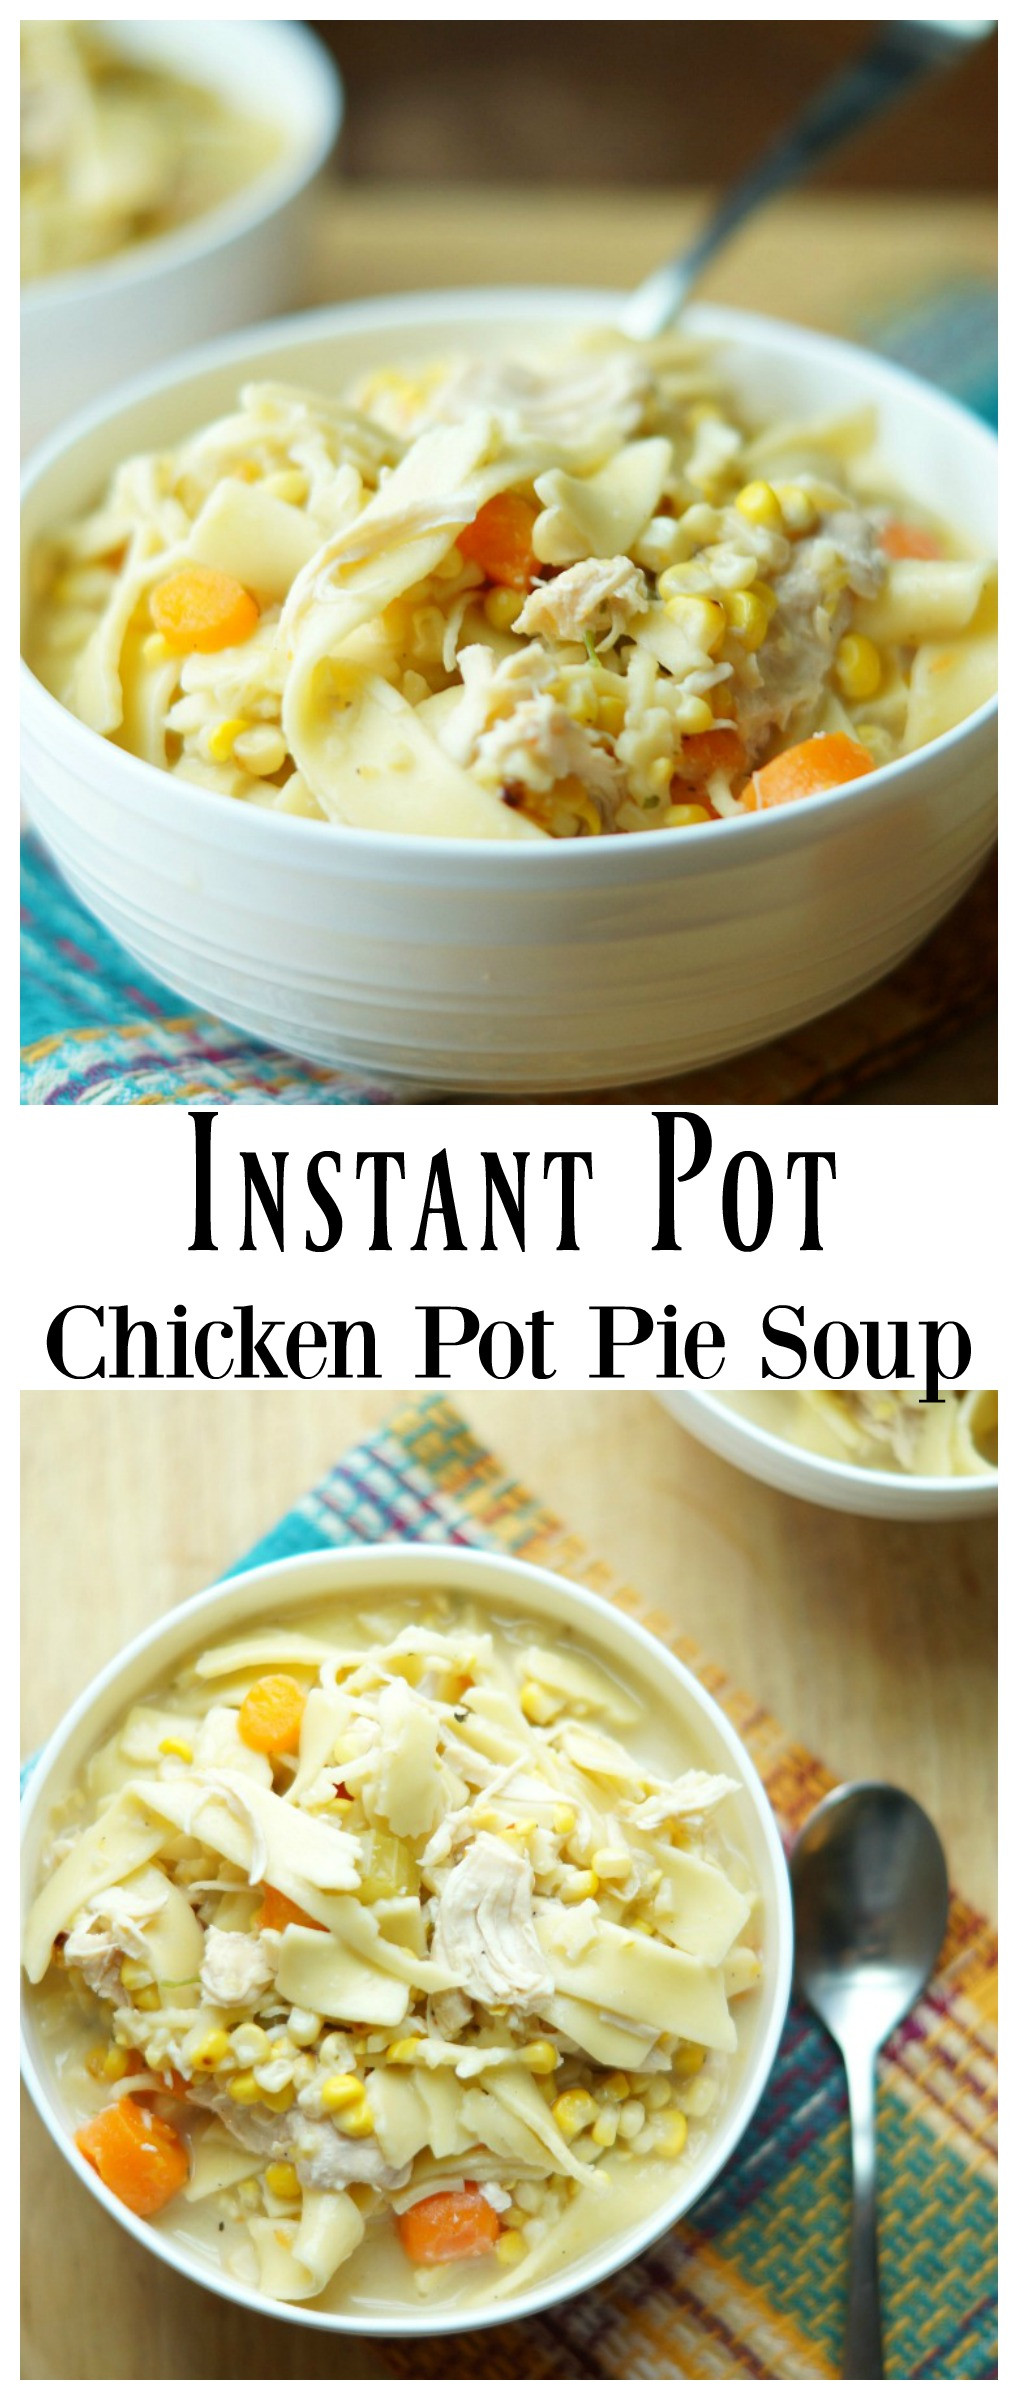 Chicken Pot Pie Soup Instant Pot
 Instant Pot Chicken Pot Pie Soup